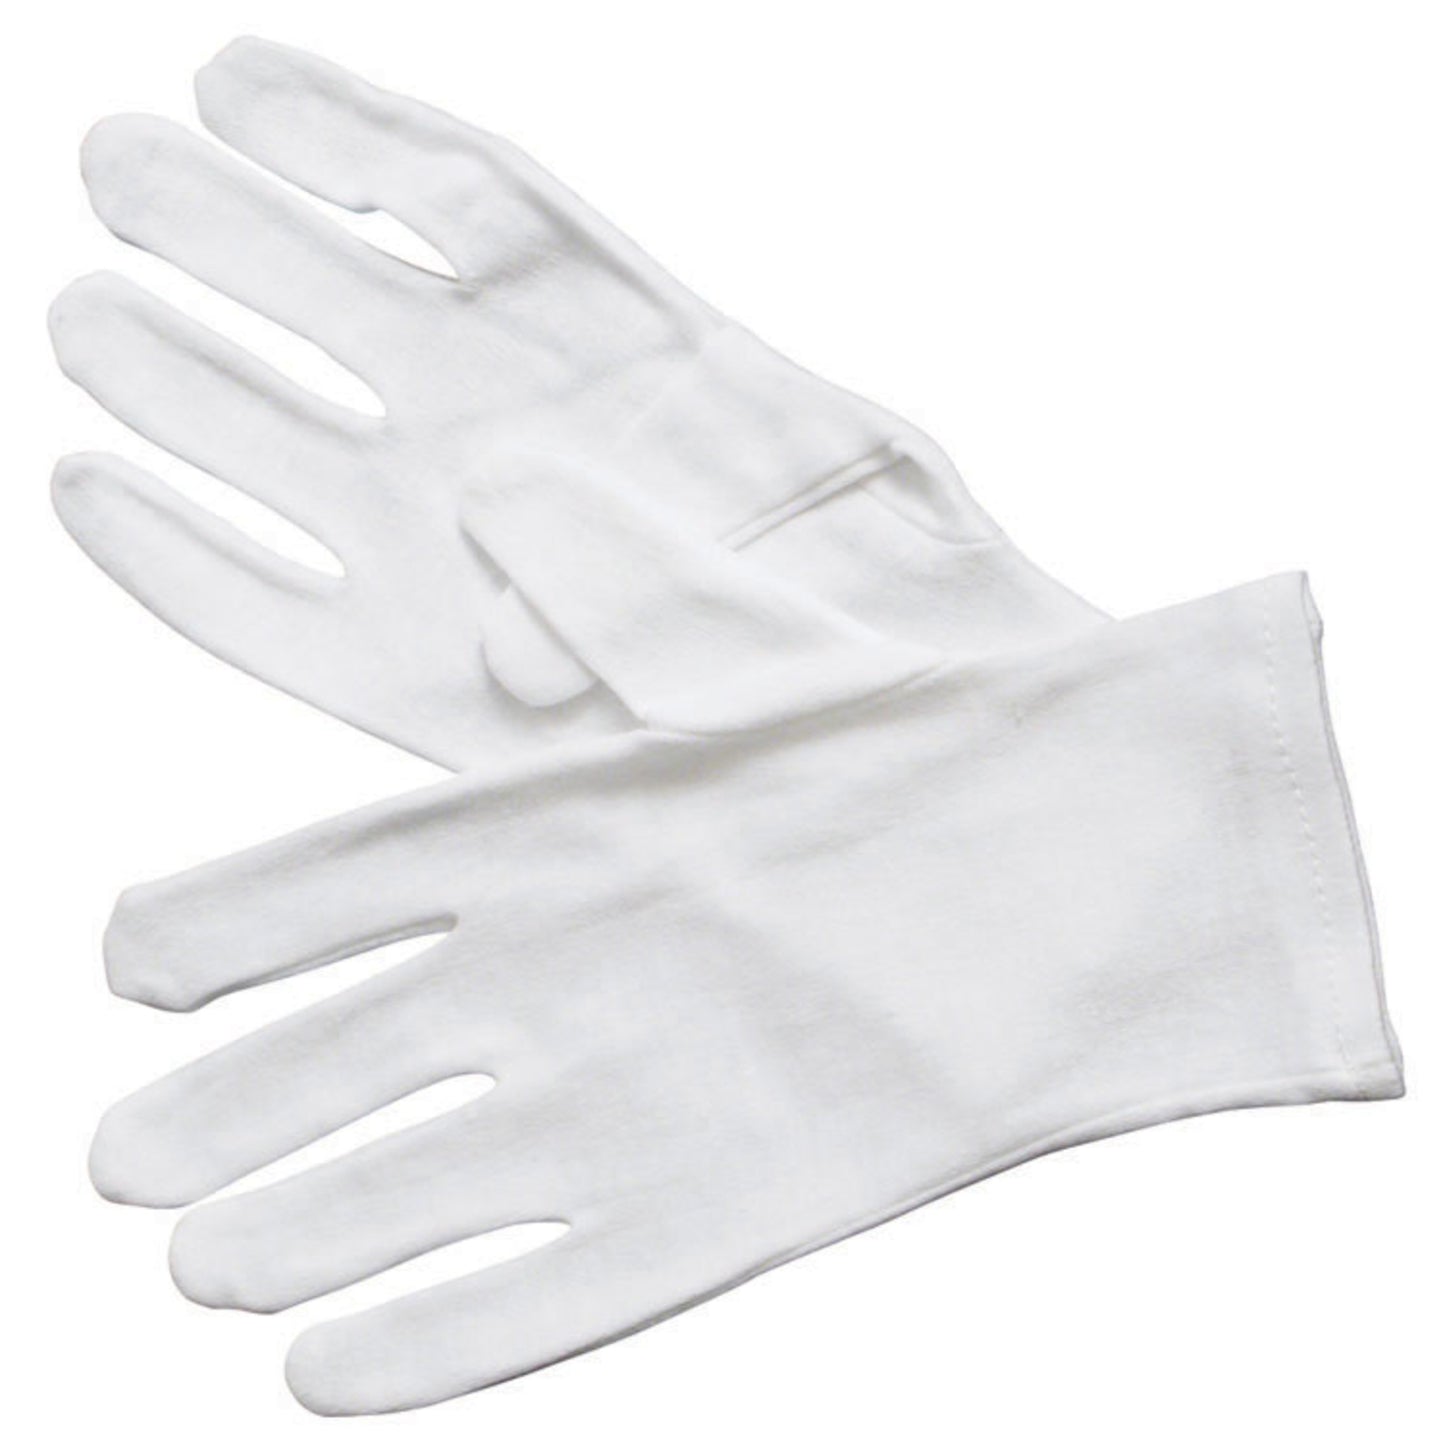 GLC-M - White Cotton Service Gloves - Medium